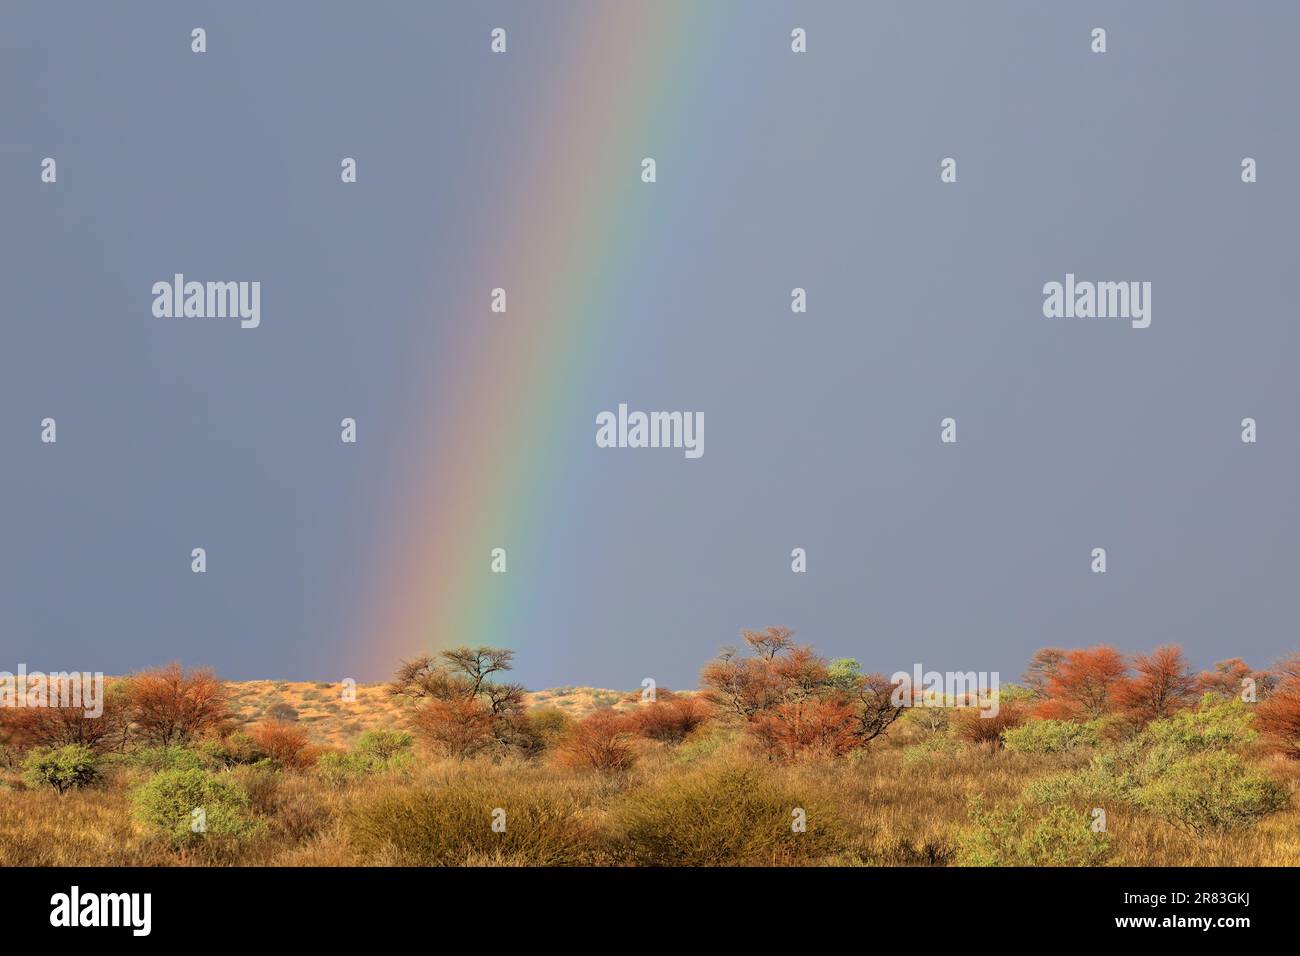 Wüstenlandschaft mit einem bunten Regenbogen in Gewitterhimmel, Kalahari-Wüste, Südafrika Stockfoto